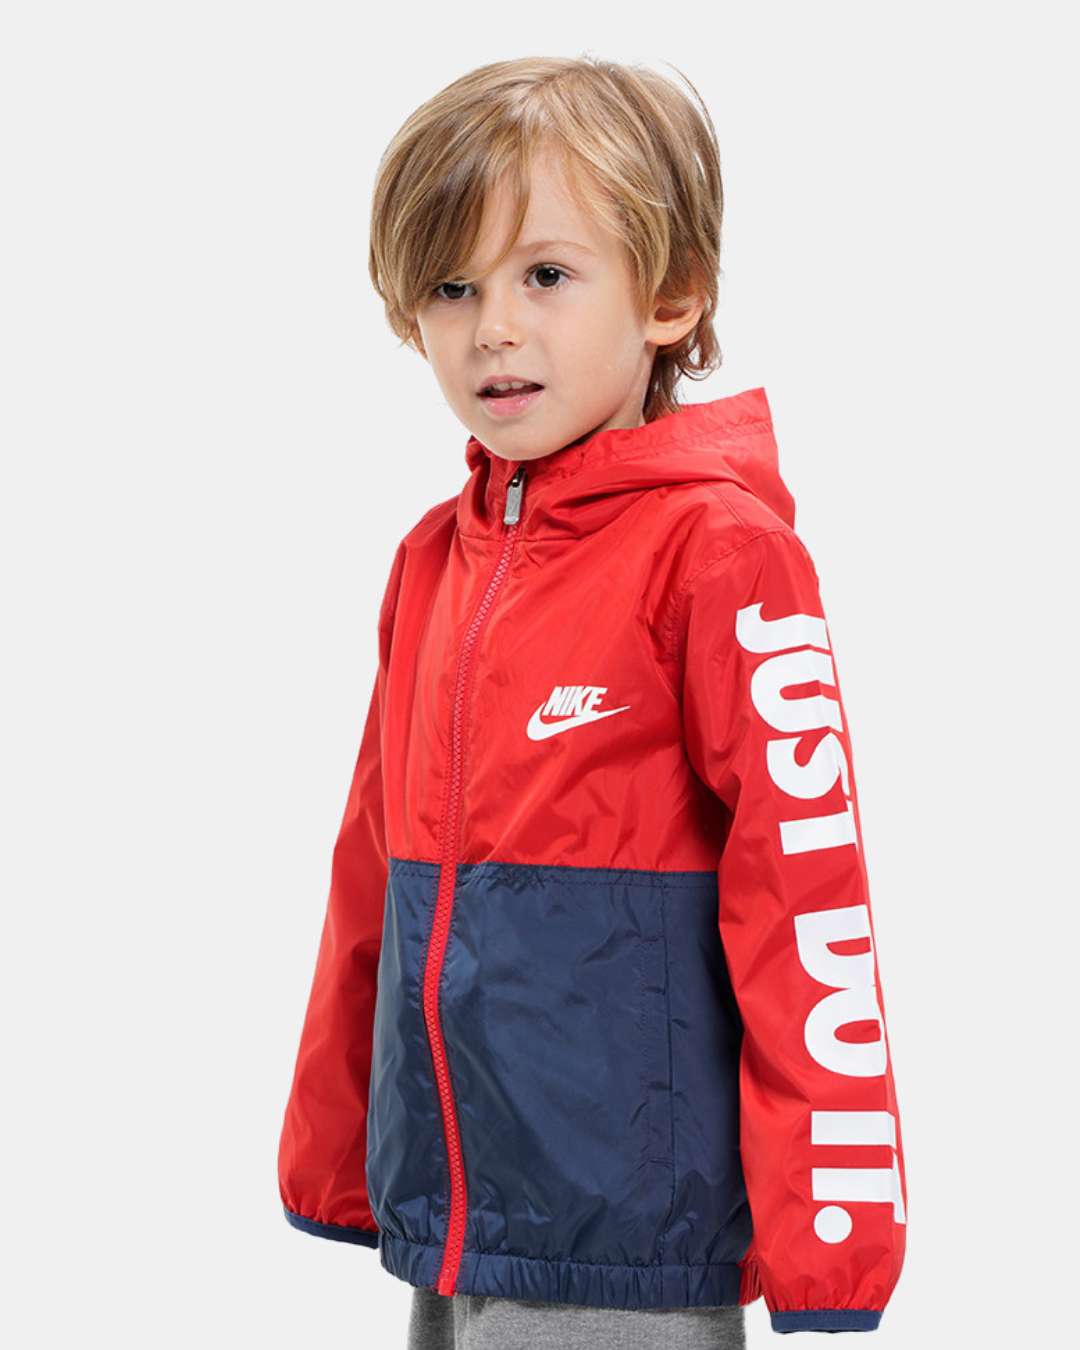 Veste Nike Enfant - Rouge